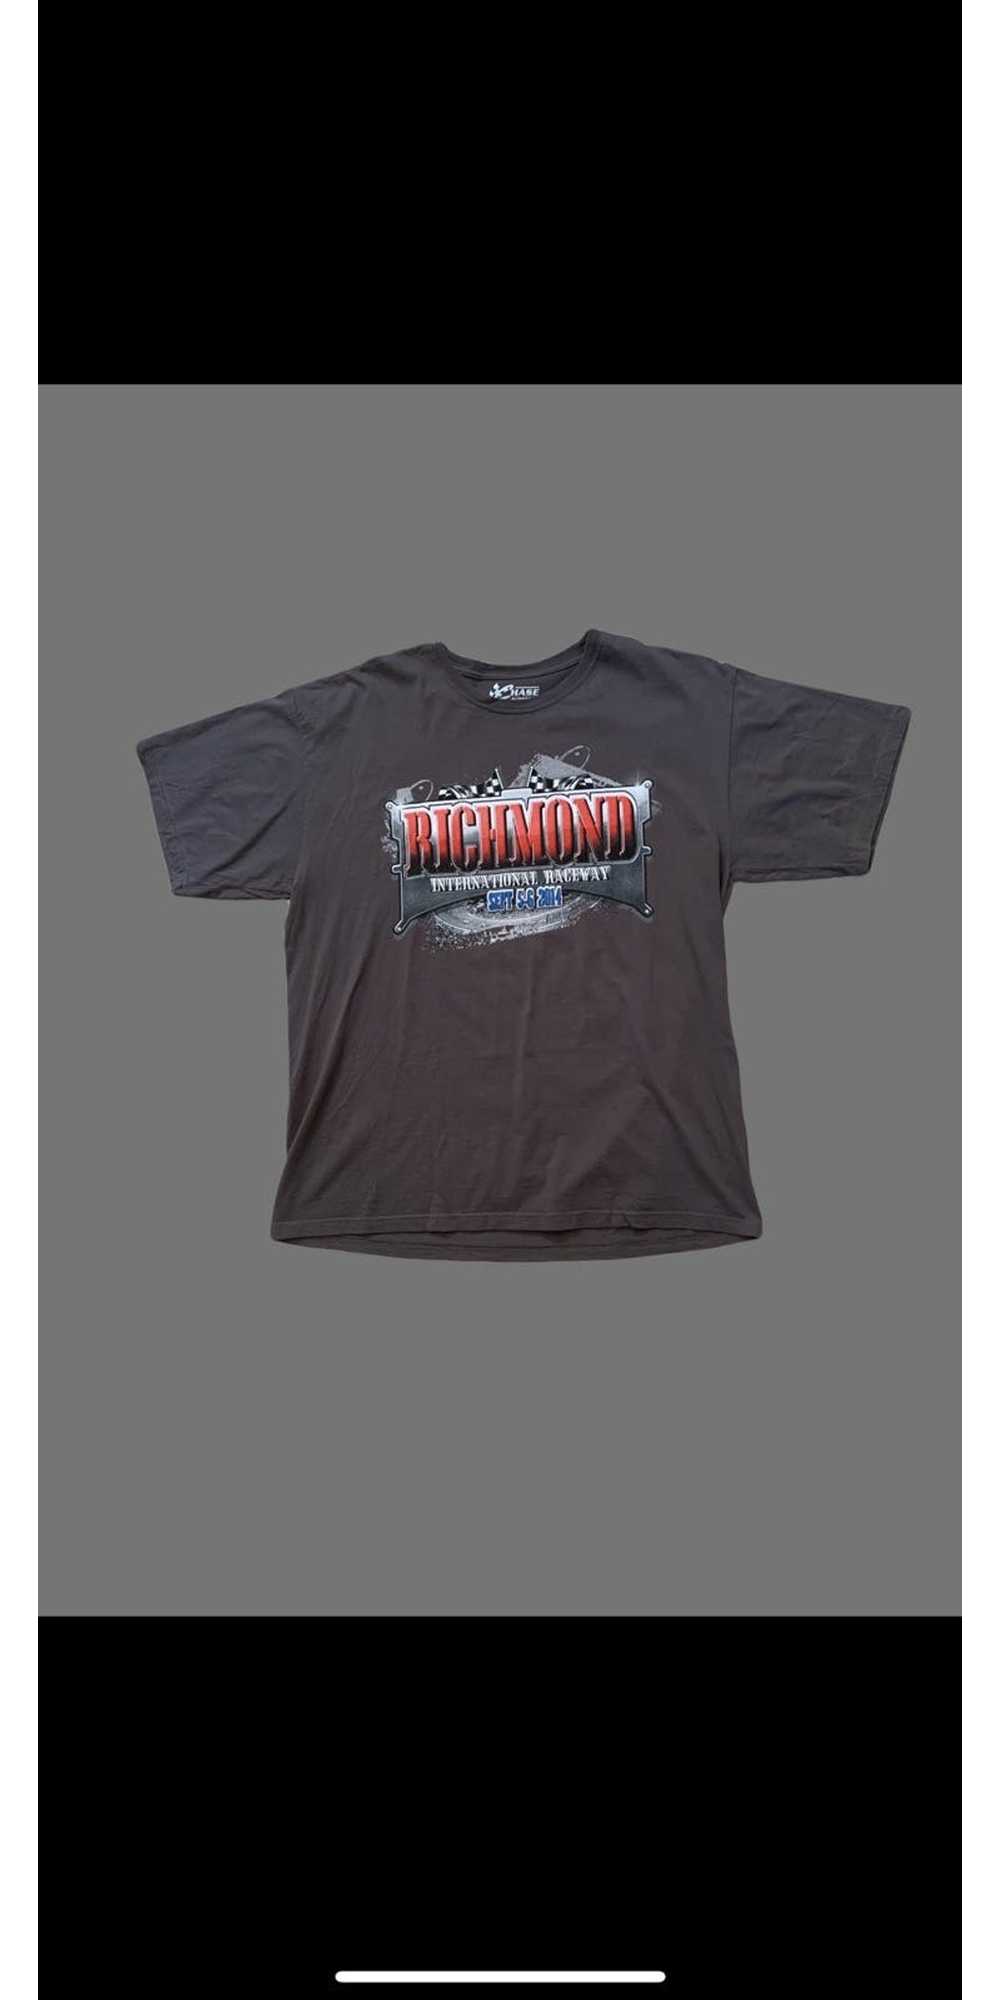 Chase Authentics × NASCAR NASCAR chase T shirt - image 3